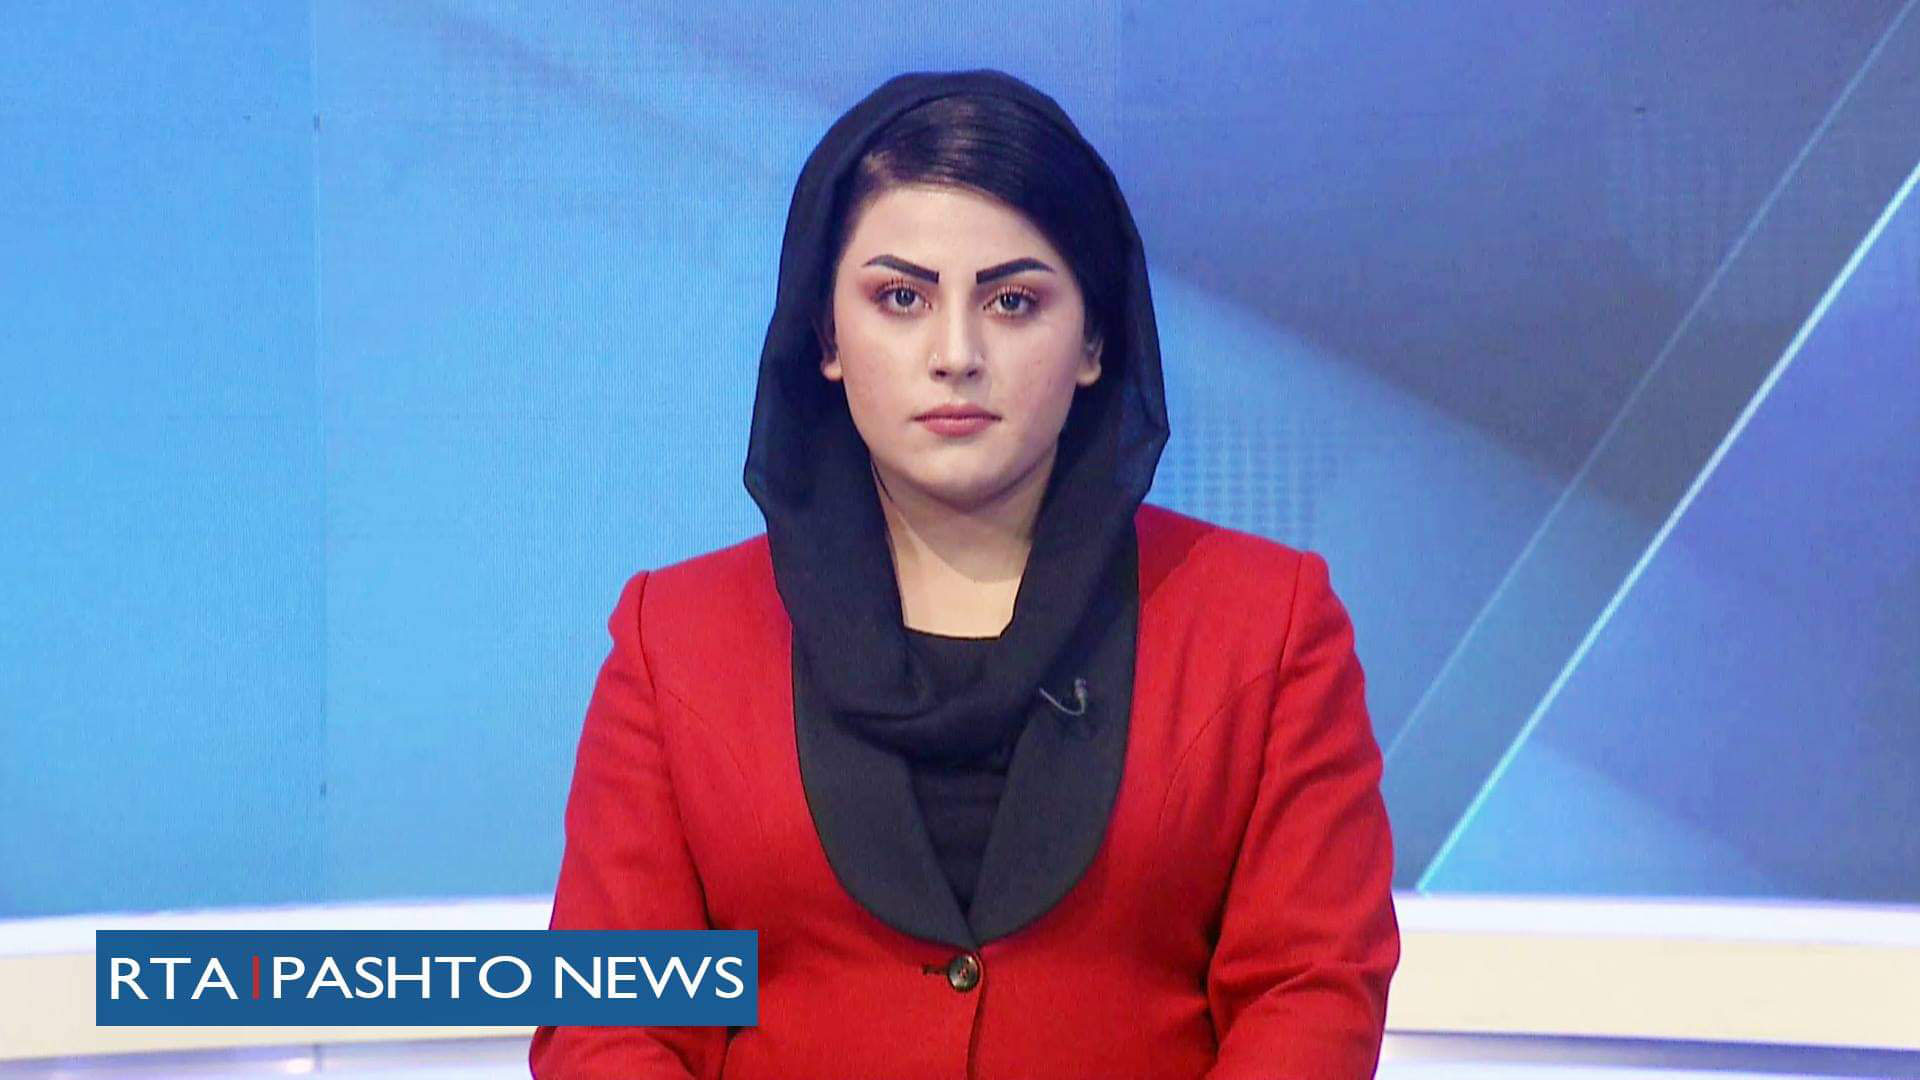 Desde este domingo, las periodistas afganas deberán taparse el rostro en TV